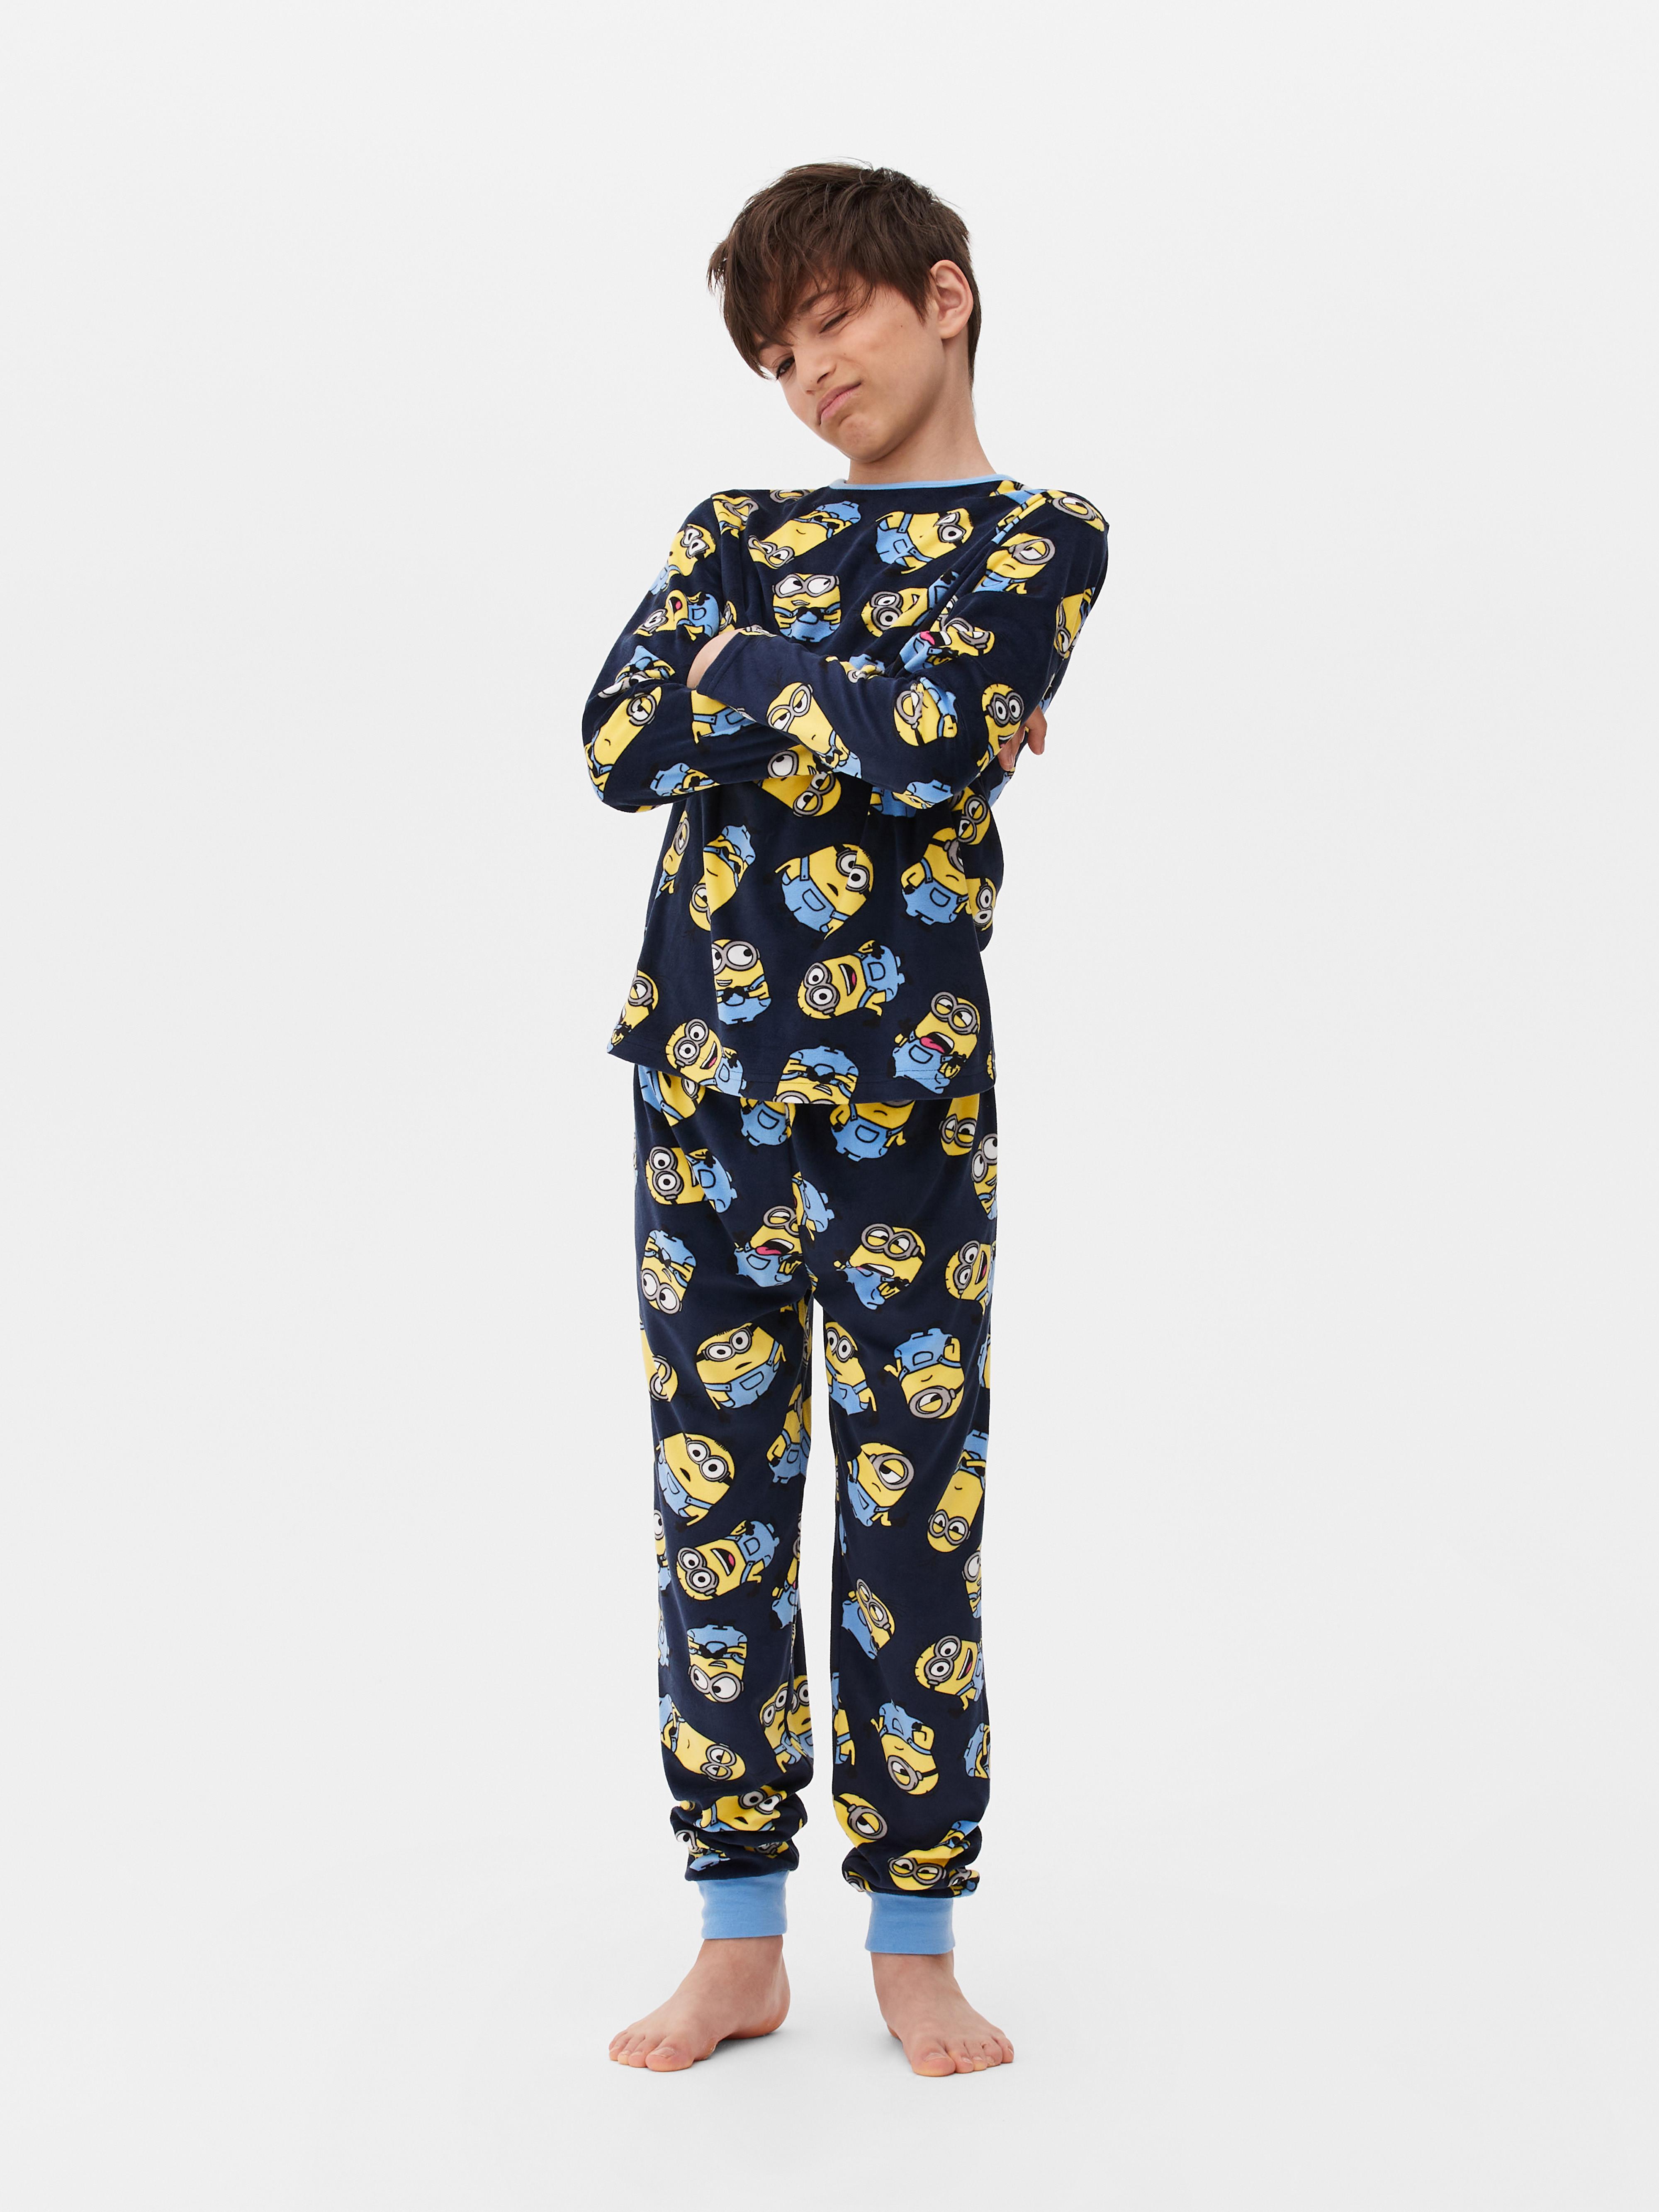 Minions Pyjama Set